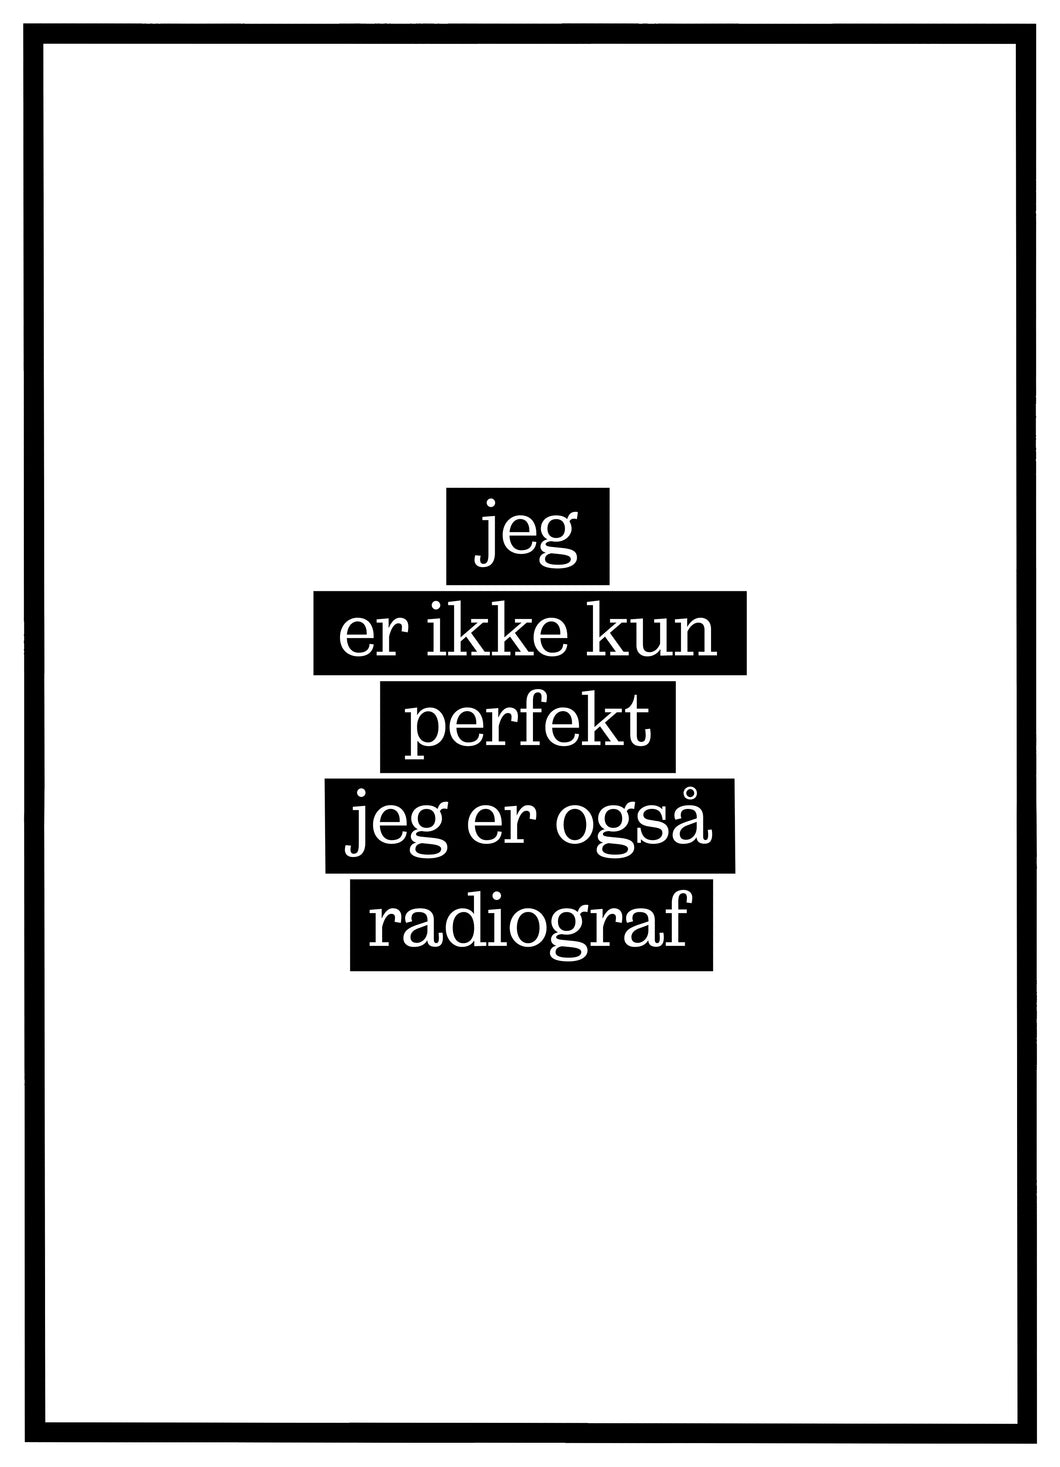 Jeg er ikke kun perfekt, jeg er også Radiograf - Plakat